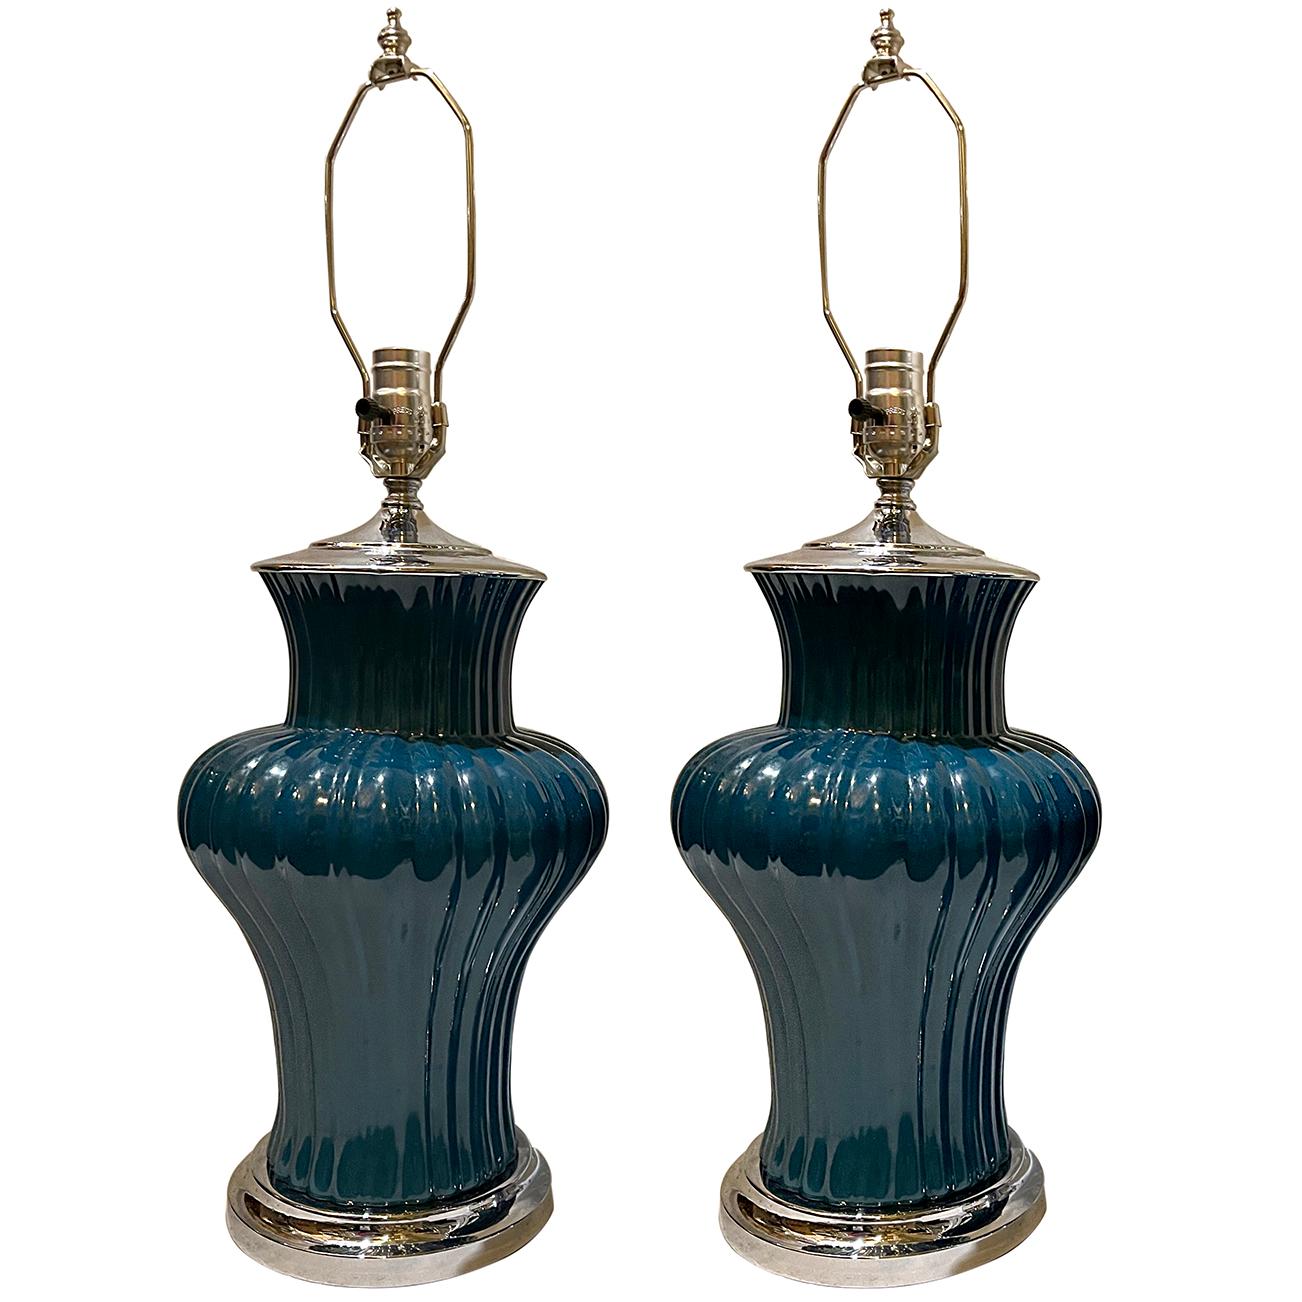 Une paire de lampes de table en porcelaine bleue italienne des années 1950 avec des bases nickelées.

Mesures :
Hauteur du corps : 17
Hauteur de l'appui de l'abat-jour : 25